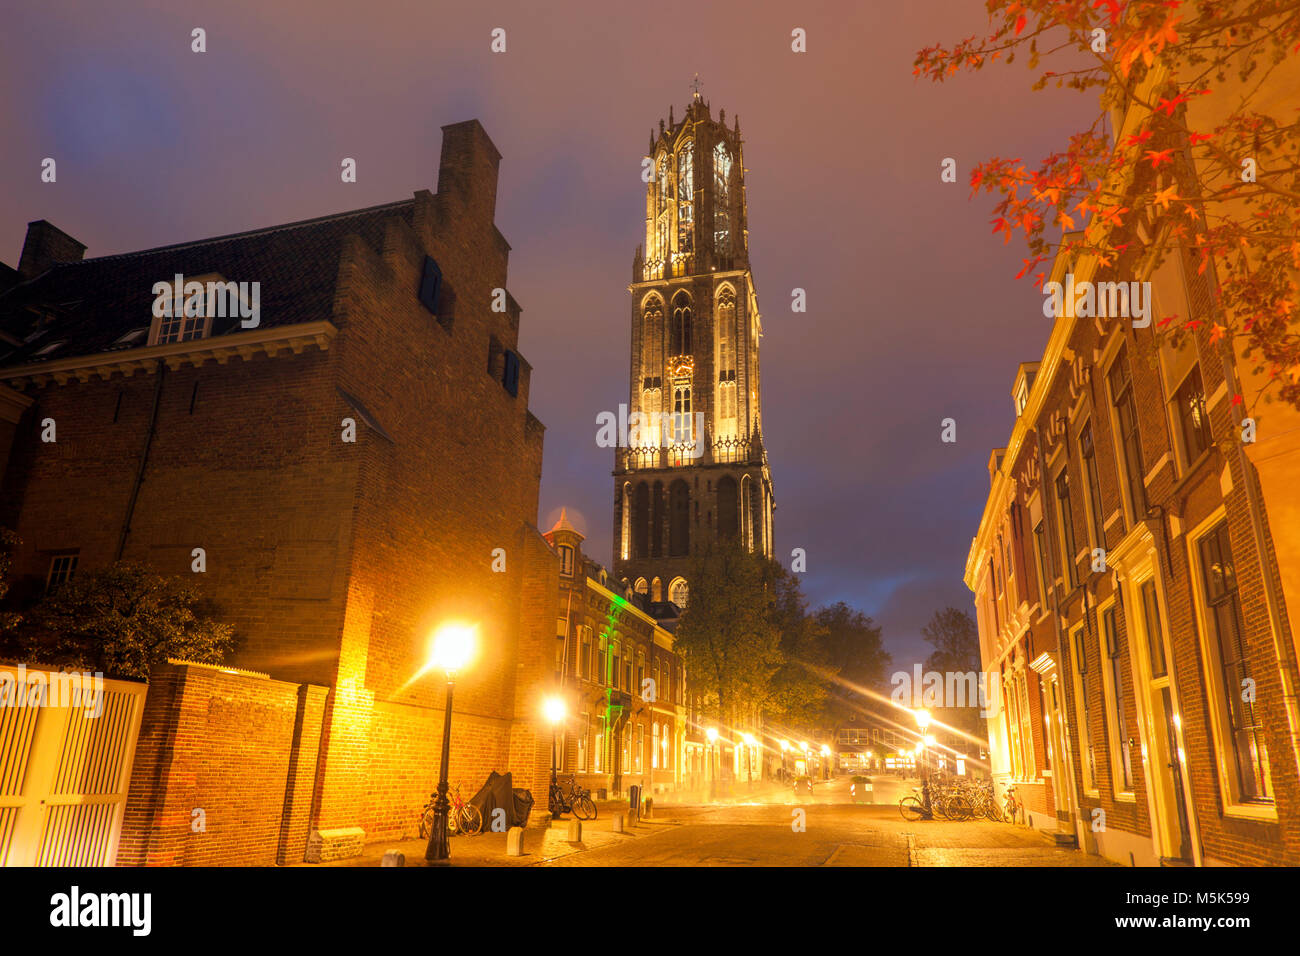 Dom Tower of Utrecht. Utrecht, South Holland, Netherlands. Stock Photo